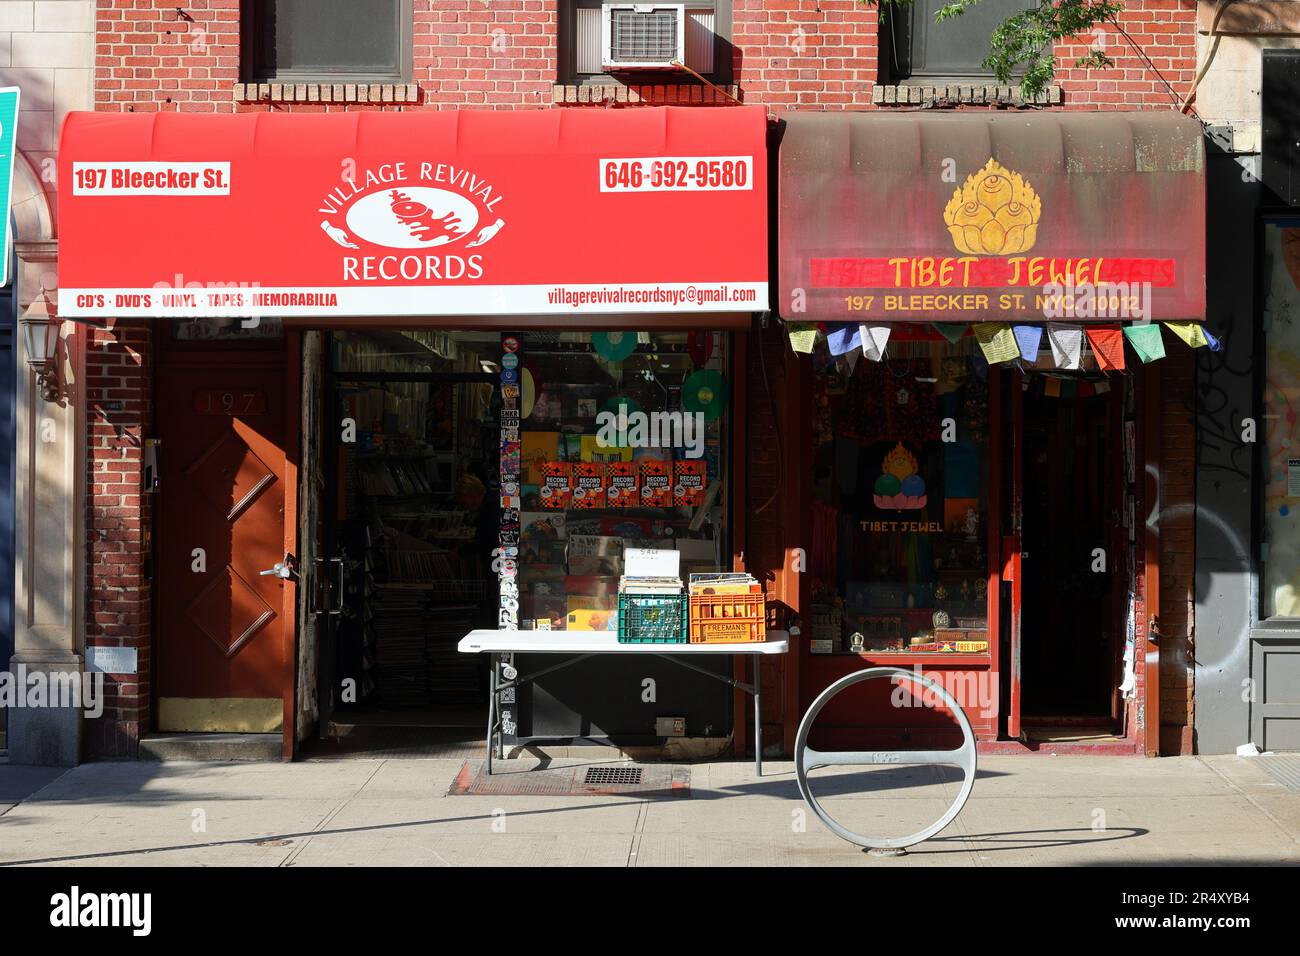 Village Revival Records, Tibet Jewel, 197 Bleecker St, New York, NYC, Foto eines Unternehmens in Manhattans Greenwich Village Stockfoto